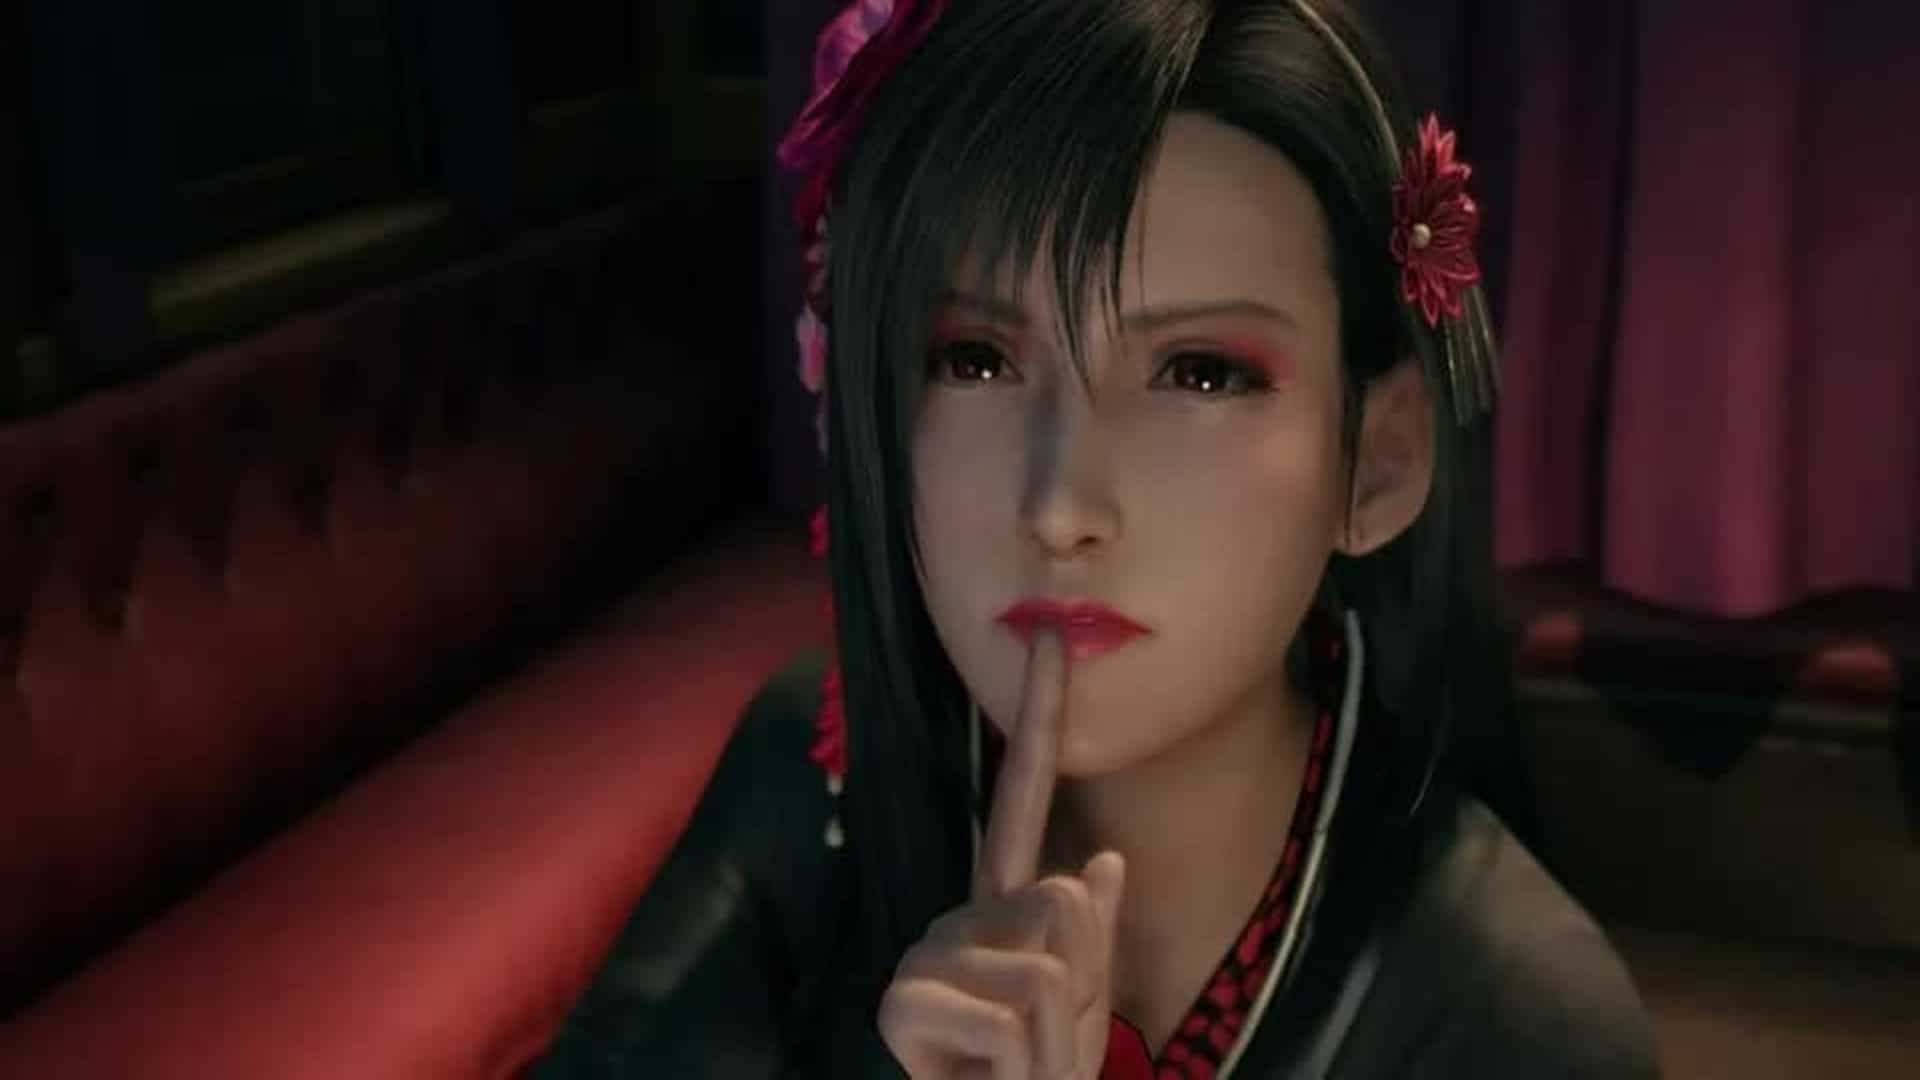 Hacker interrumpe Reunión del Senado italiano mostrando un vídeo inapropiado de Final Fantasy, GamersRD